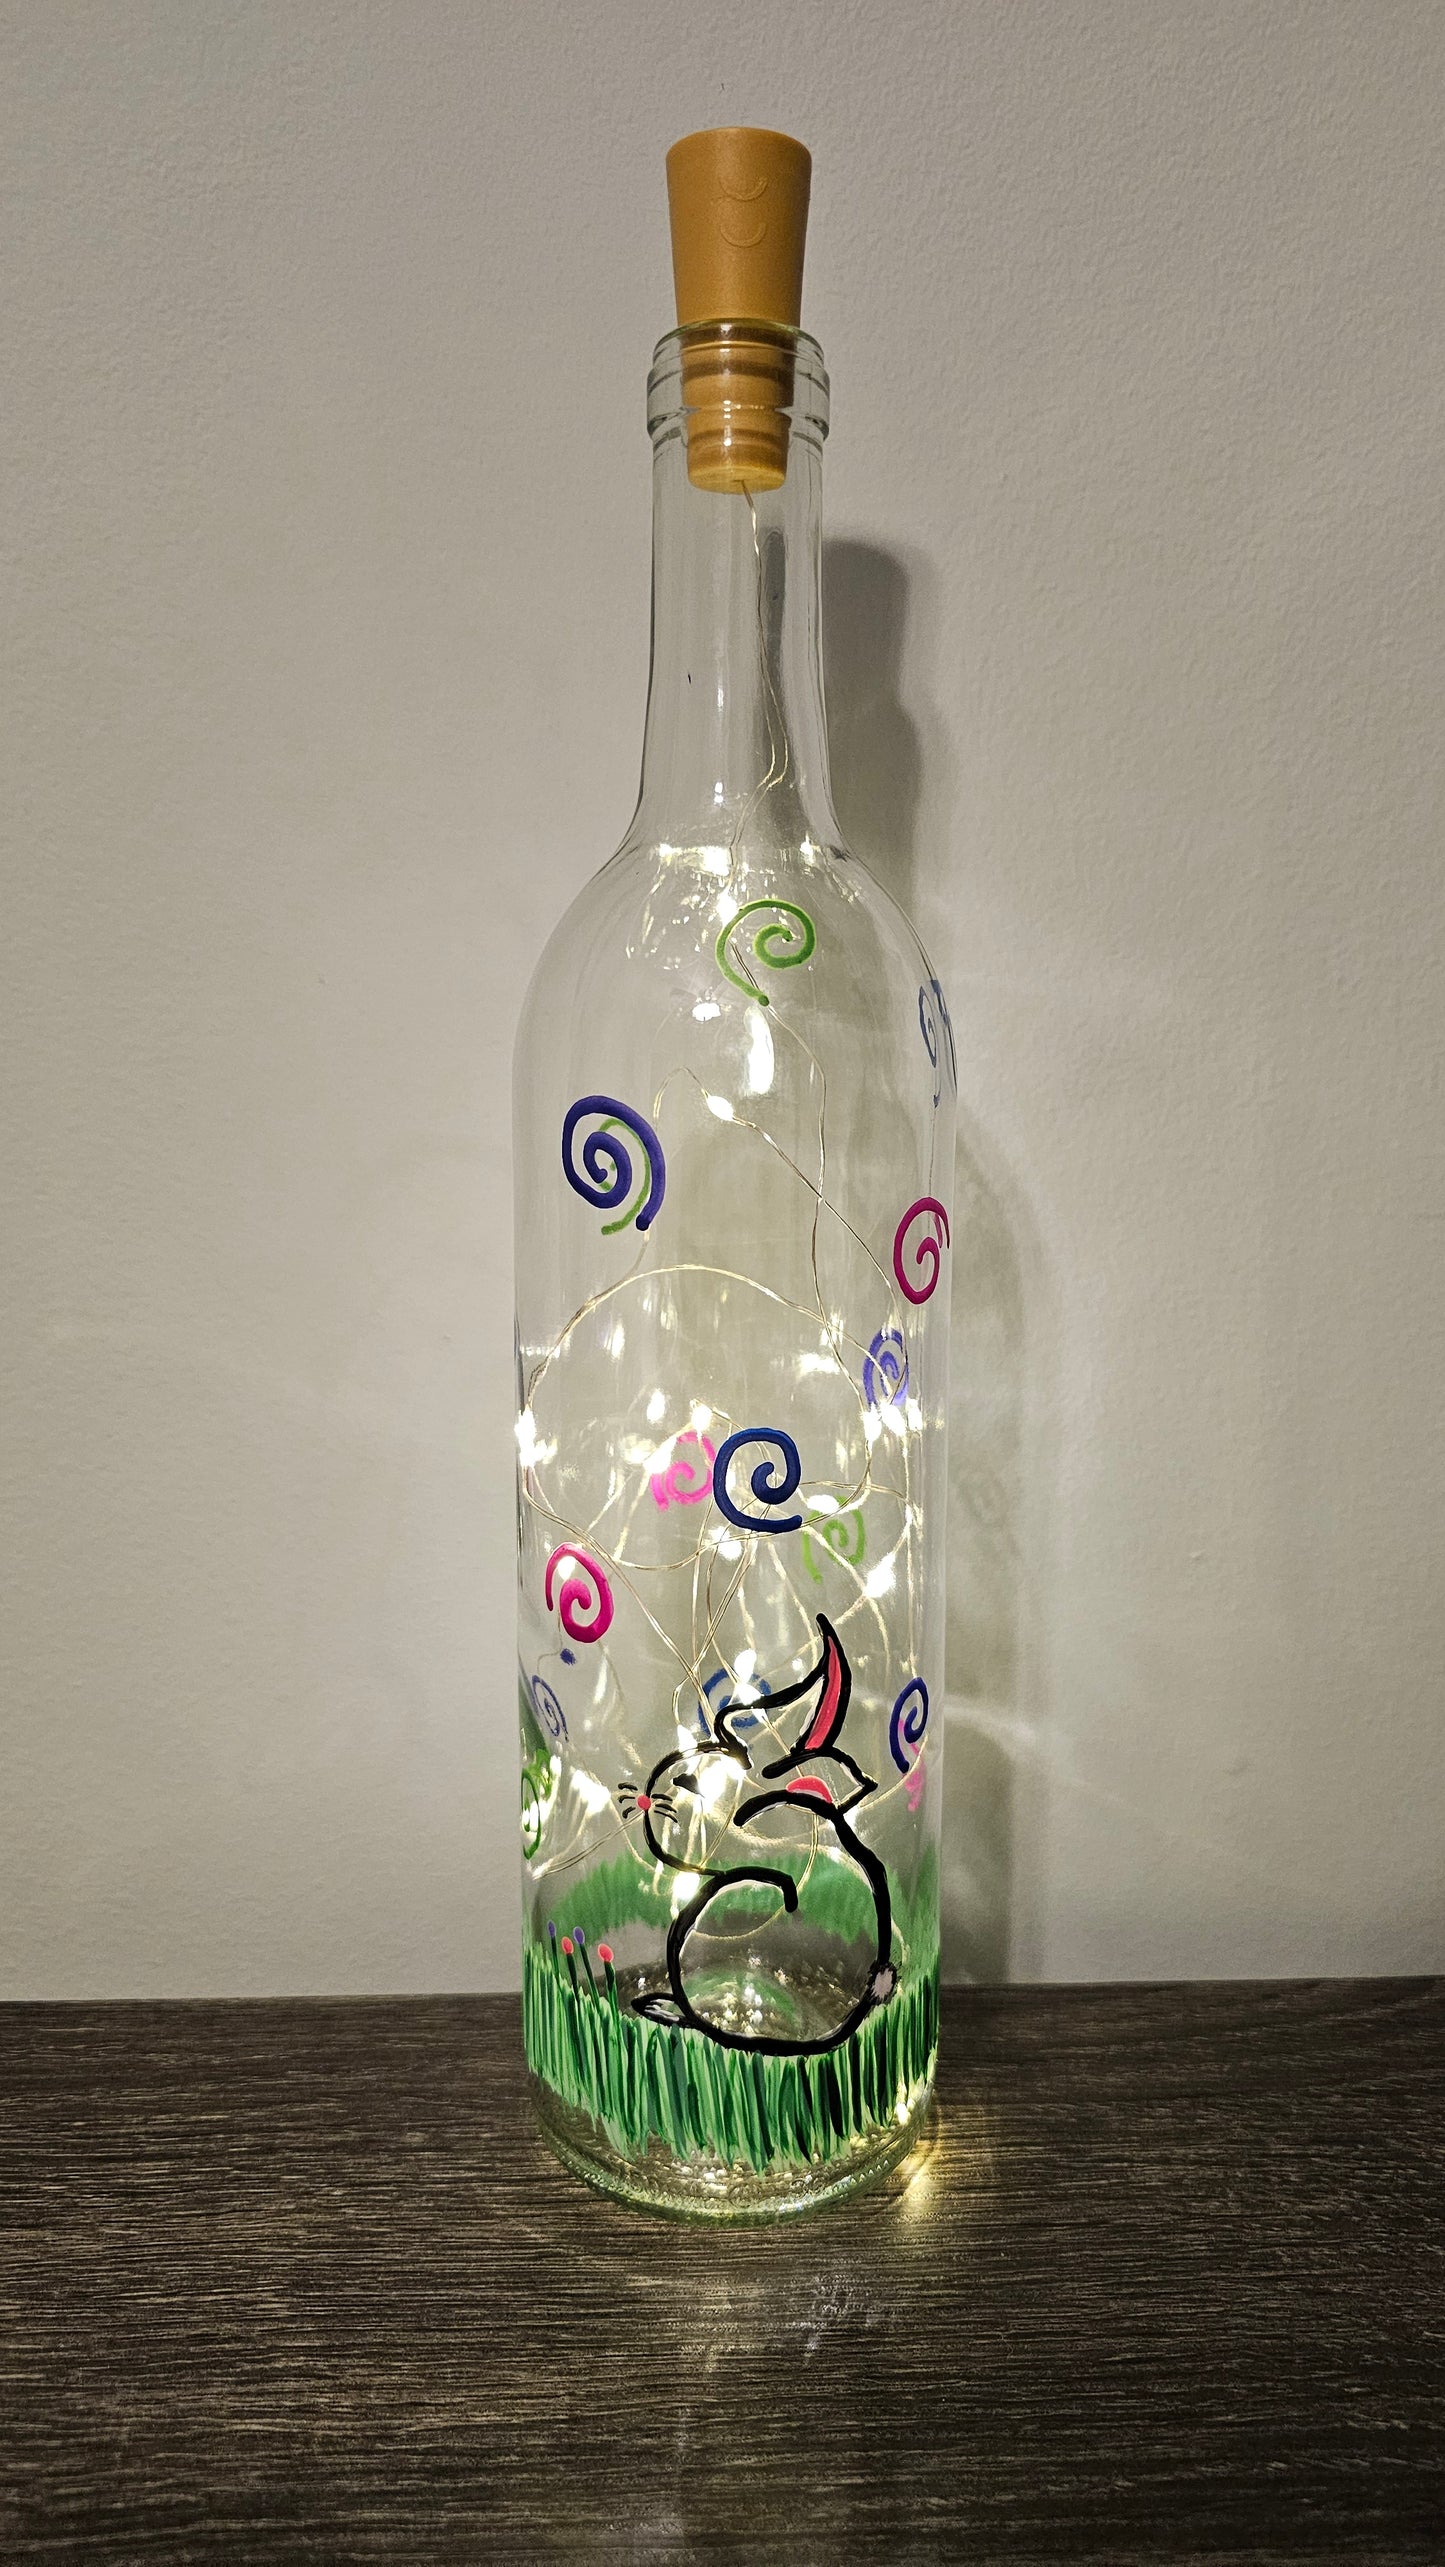 Easter Bunny Lighted Wine Bottle